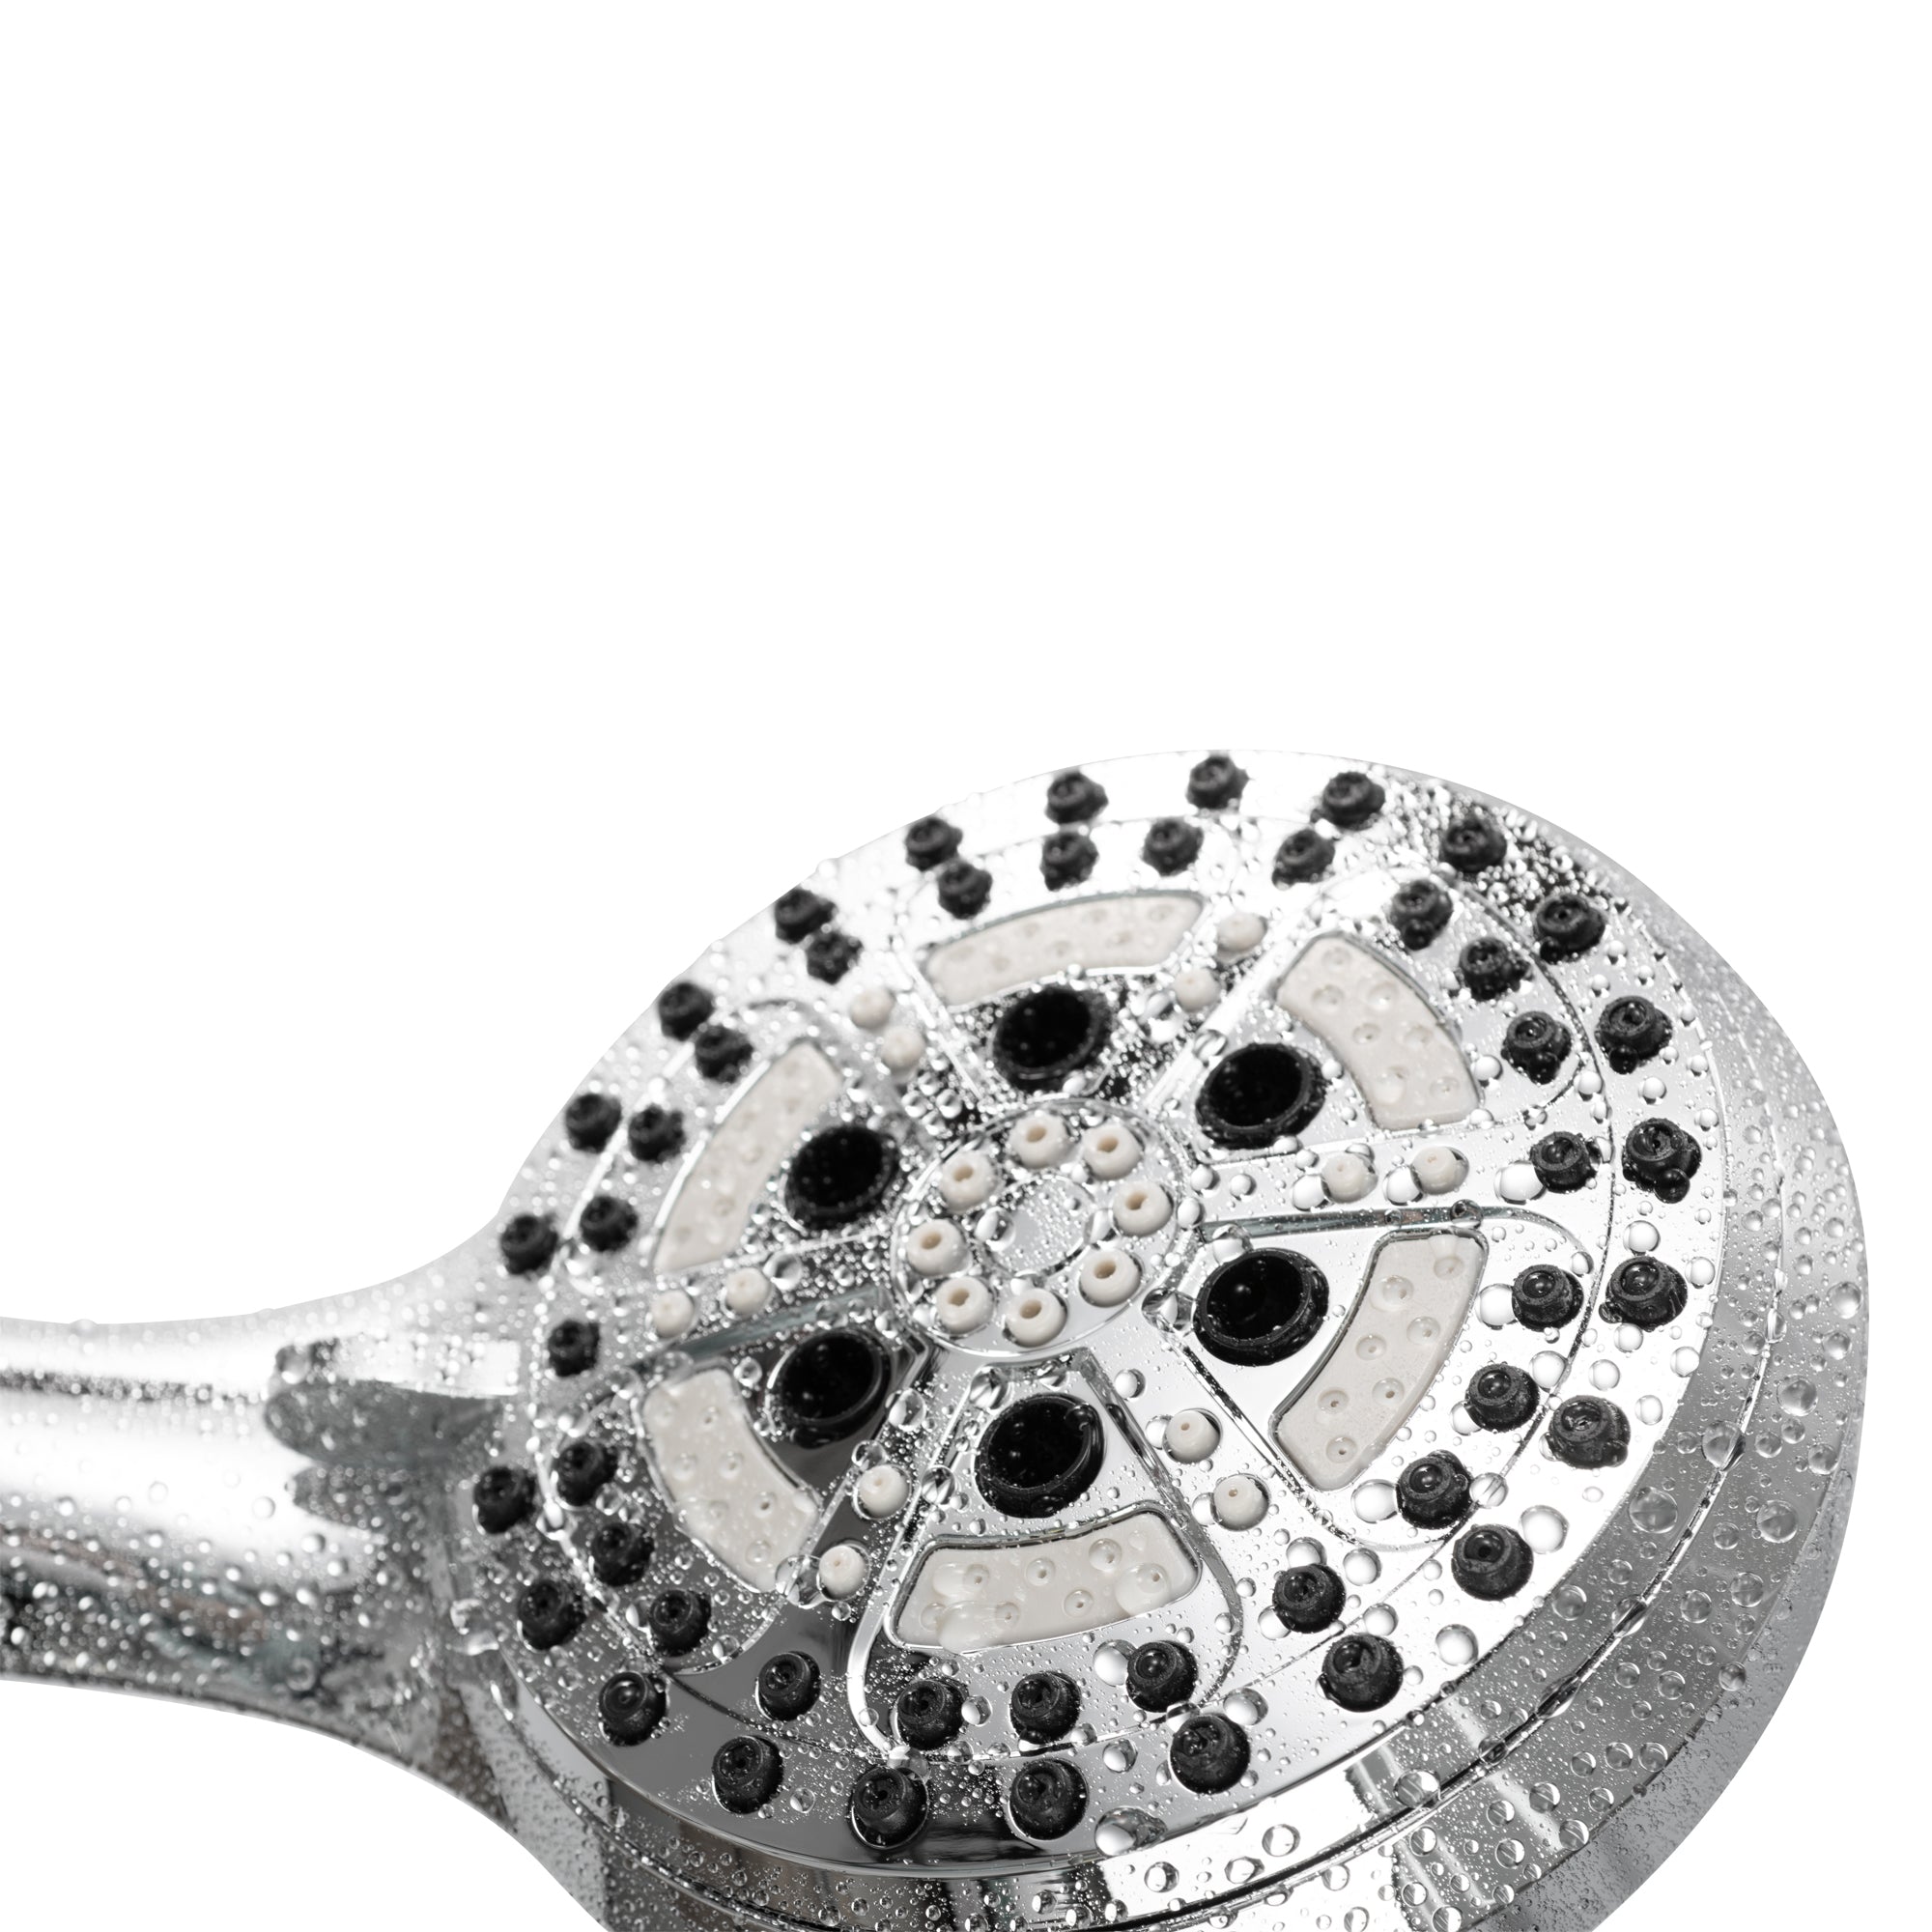 PULSE ShowerSpas Brushed Nickel Shower System - Oasis Shower System